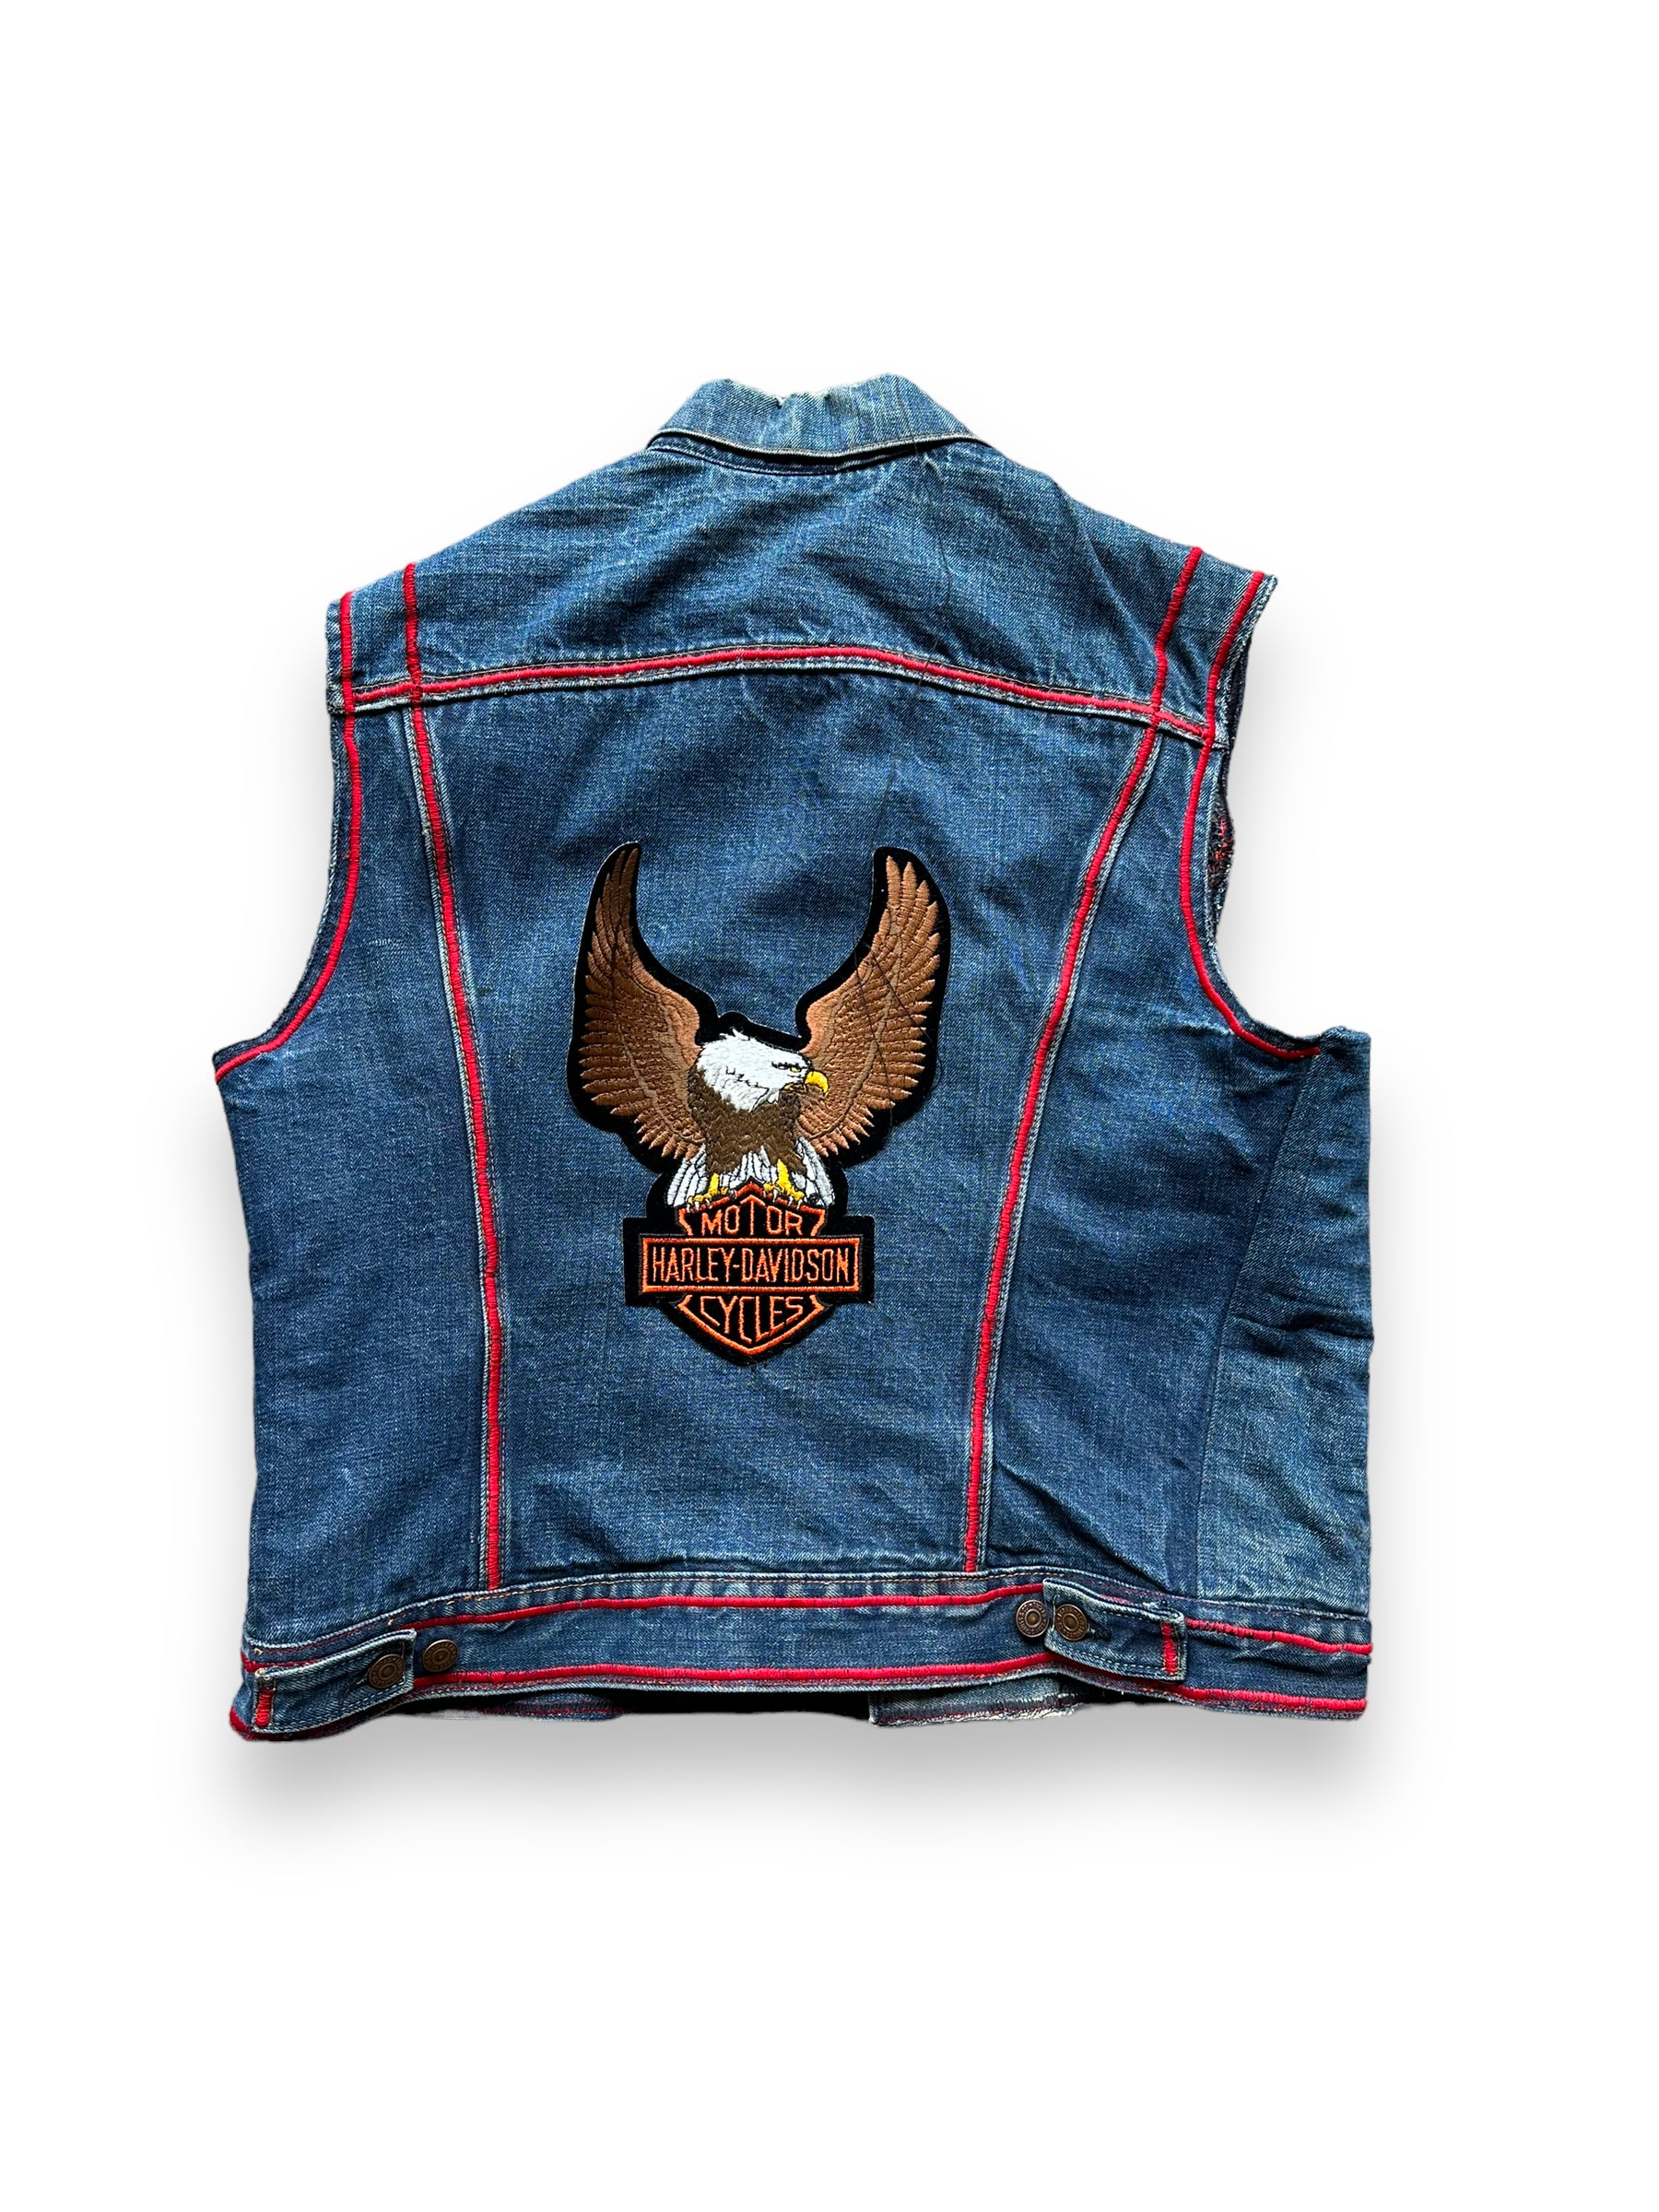 Harley Davidson Eagle Denim Vest Mens Jean, Men's Fashion, Tops & Sets,  Vests on Carousell